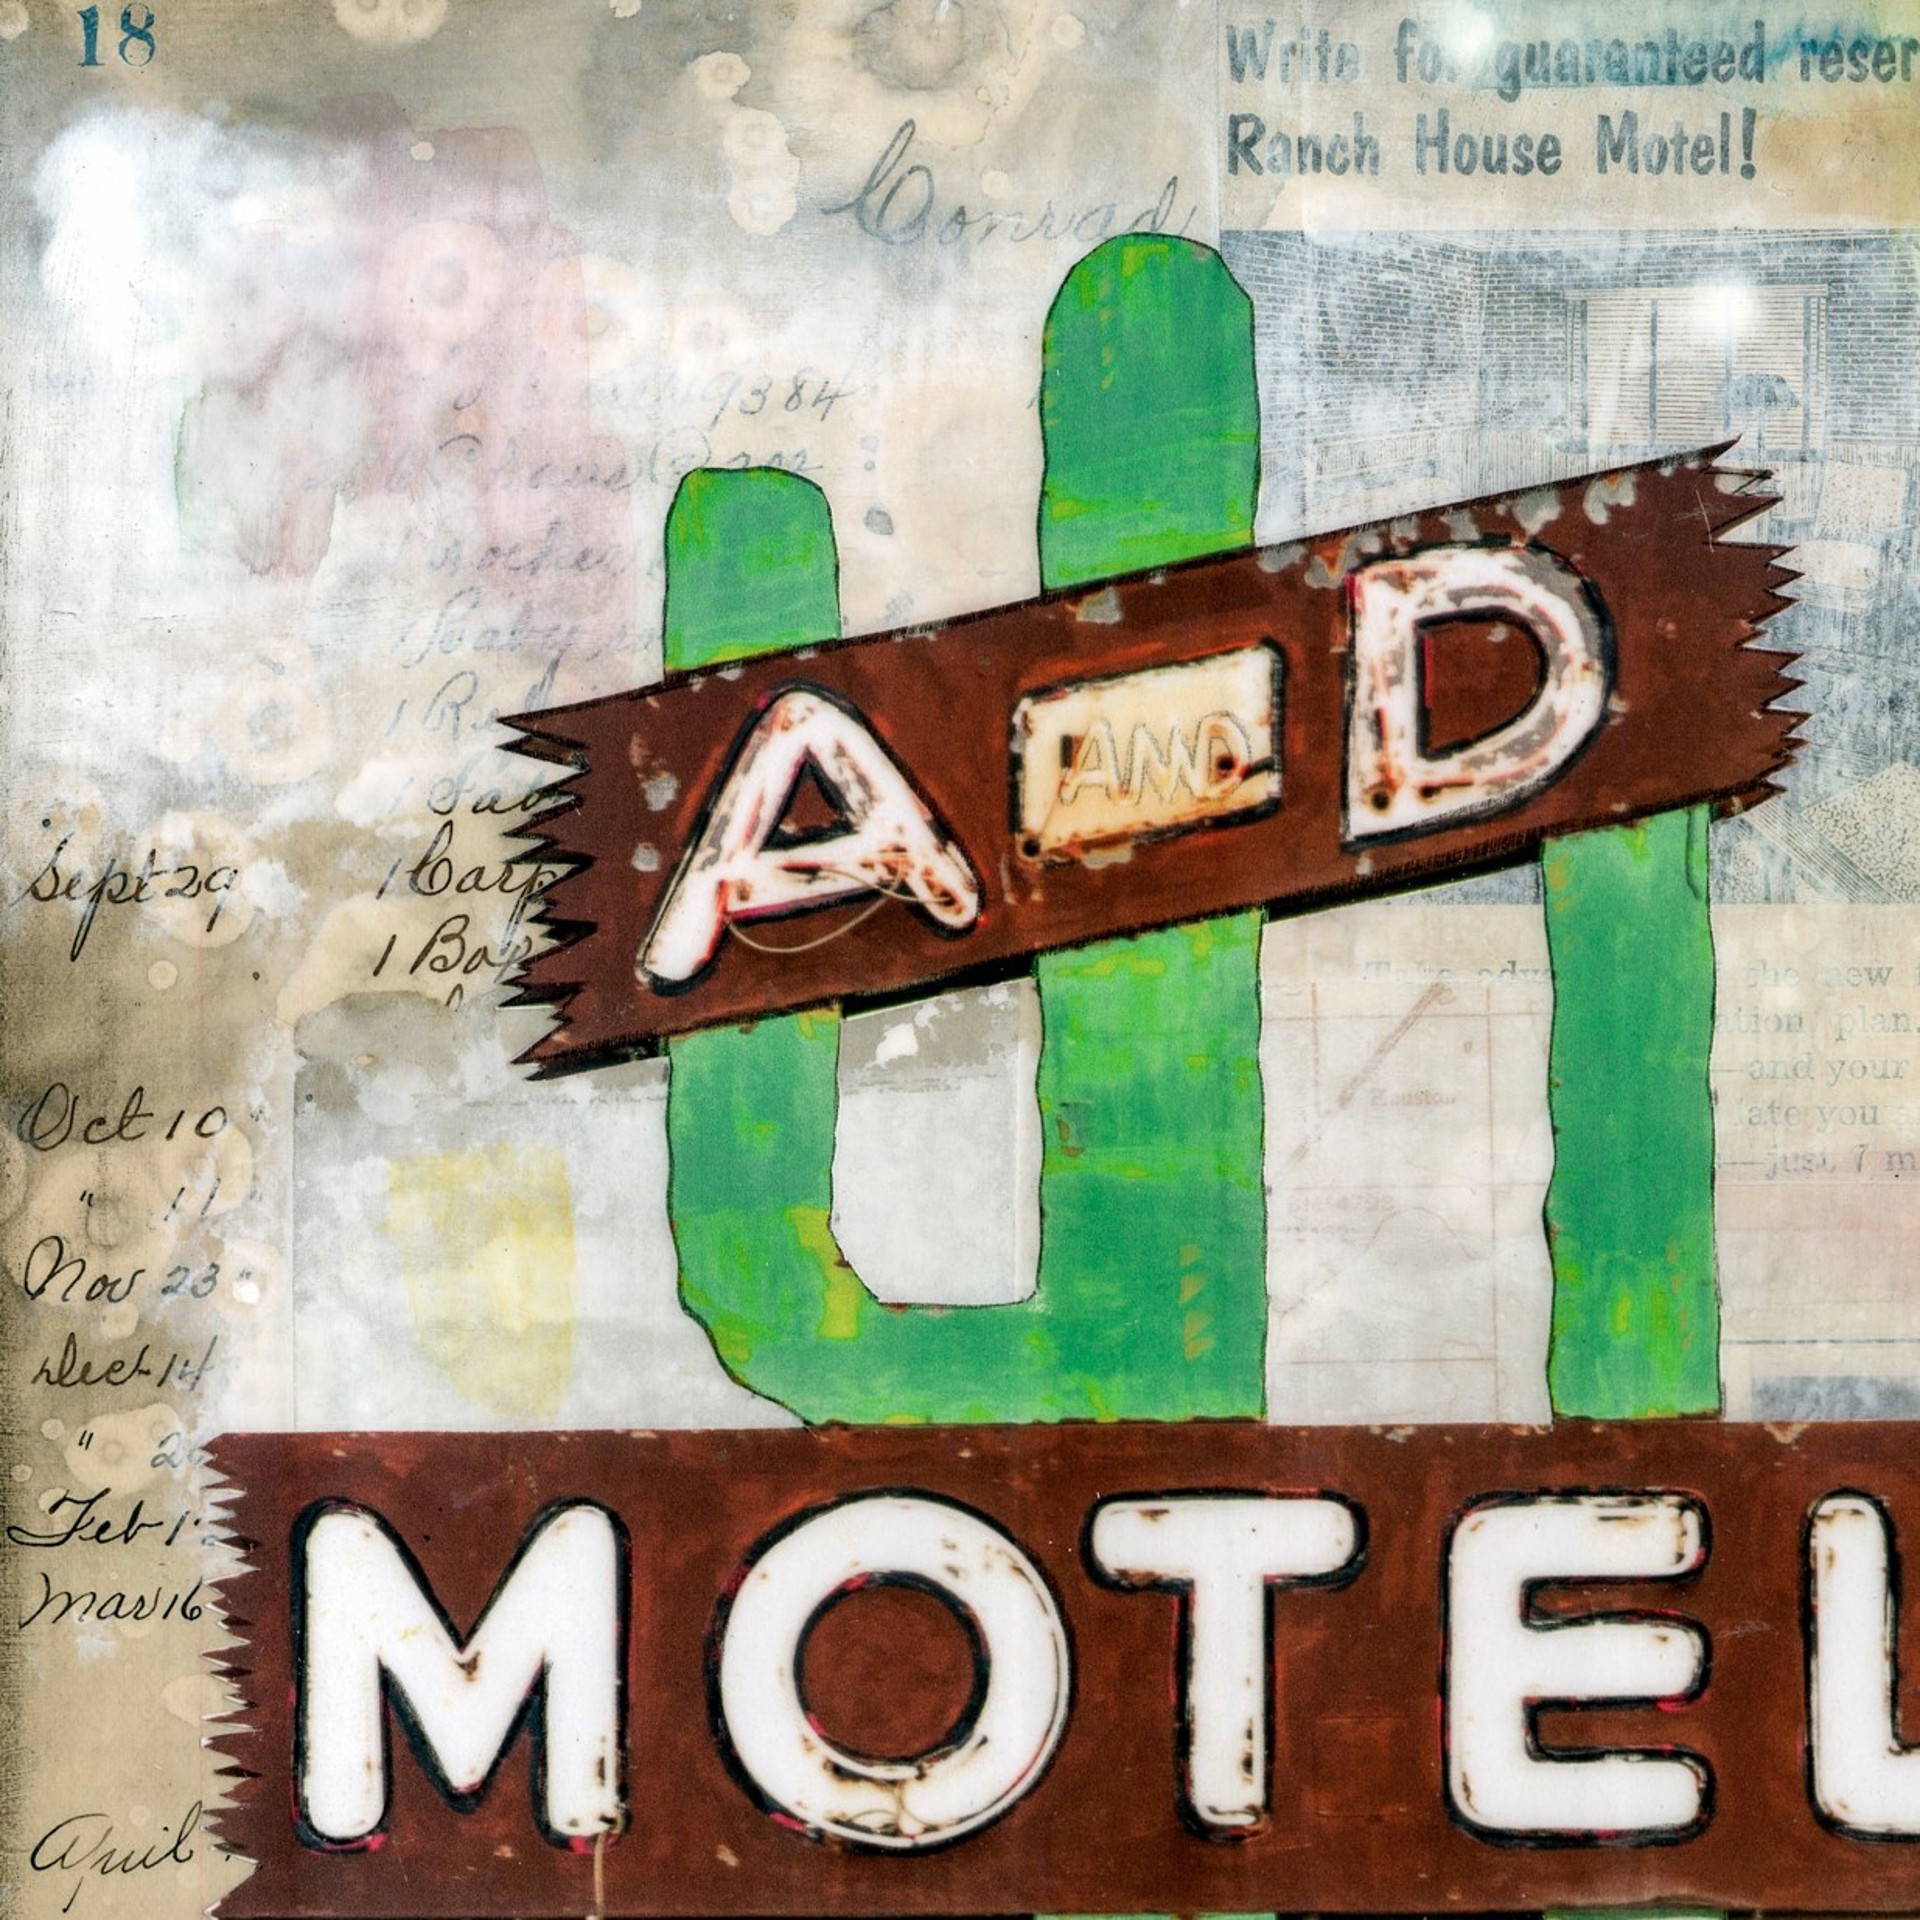 A&D Motel by JC Spock